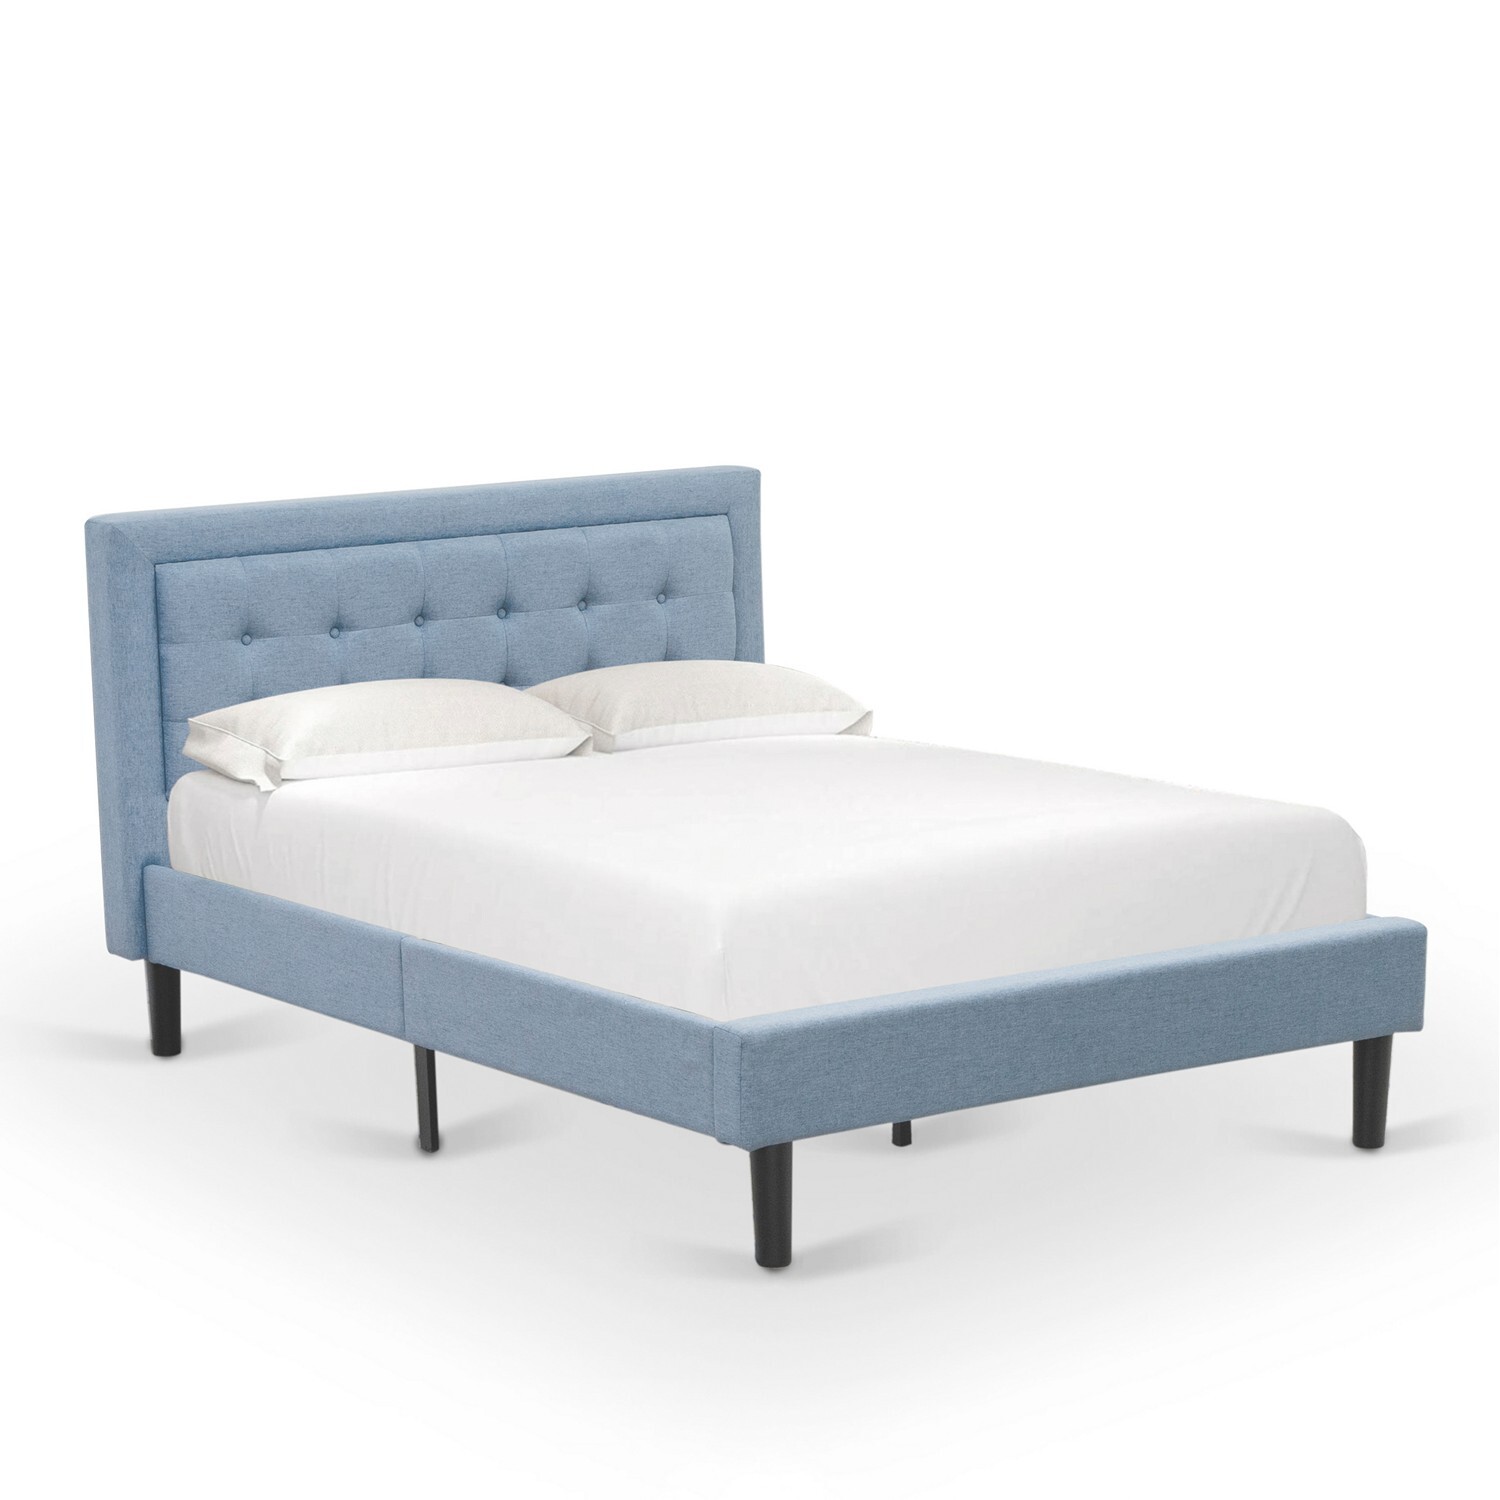 East West Furniture 2-piece Wood Platform Full Bedroom Set in Denim Blue/Navy - image 2 of 5